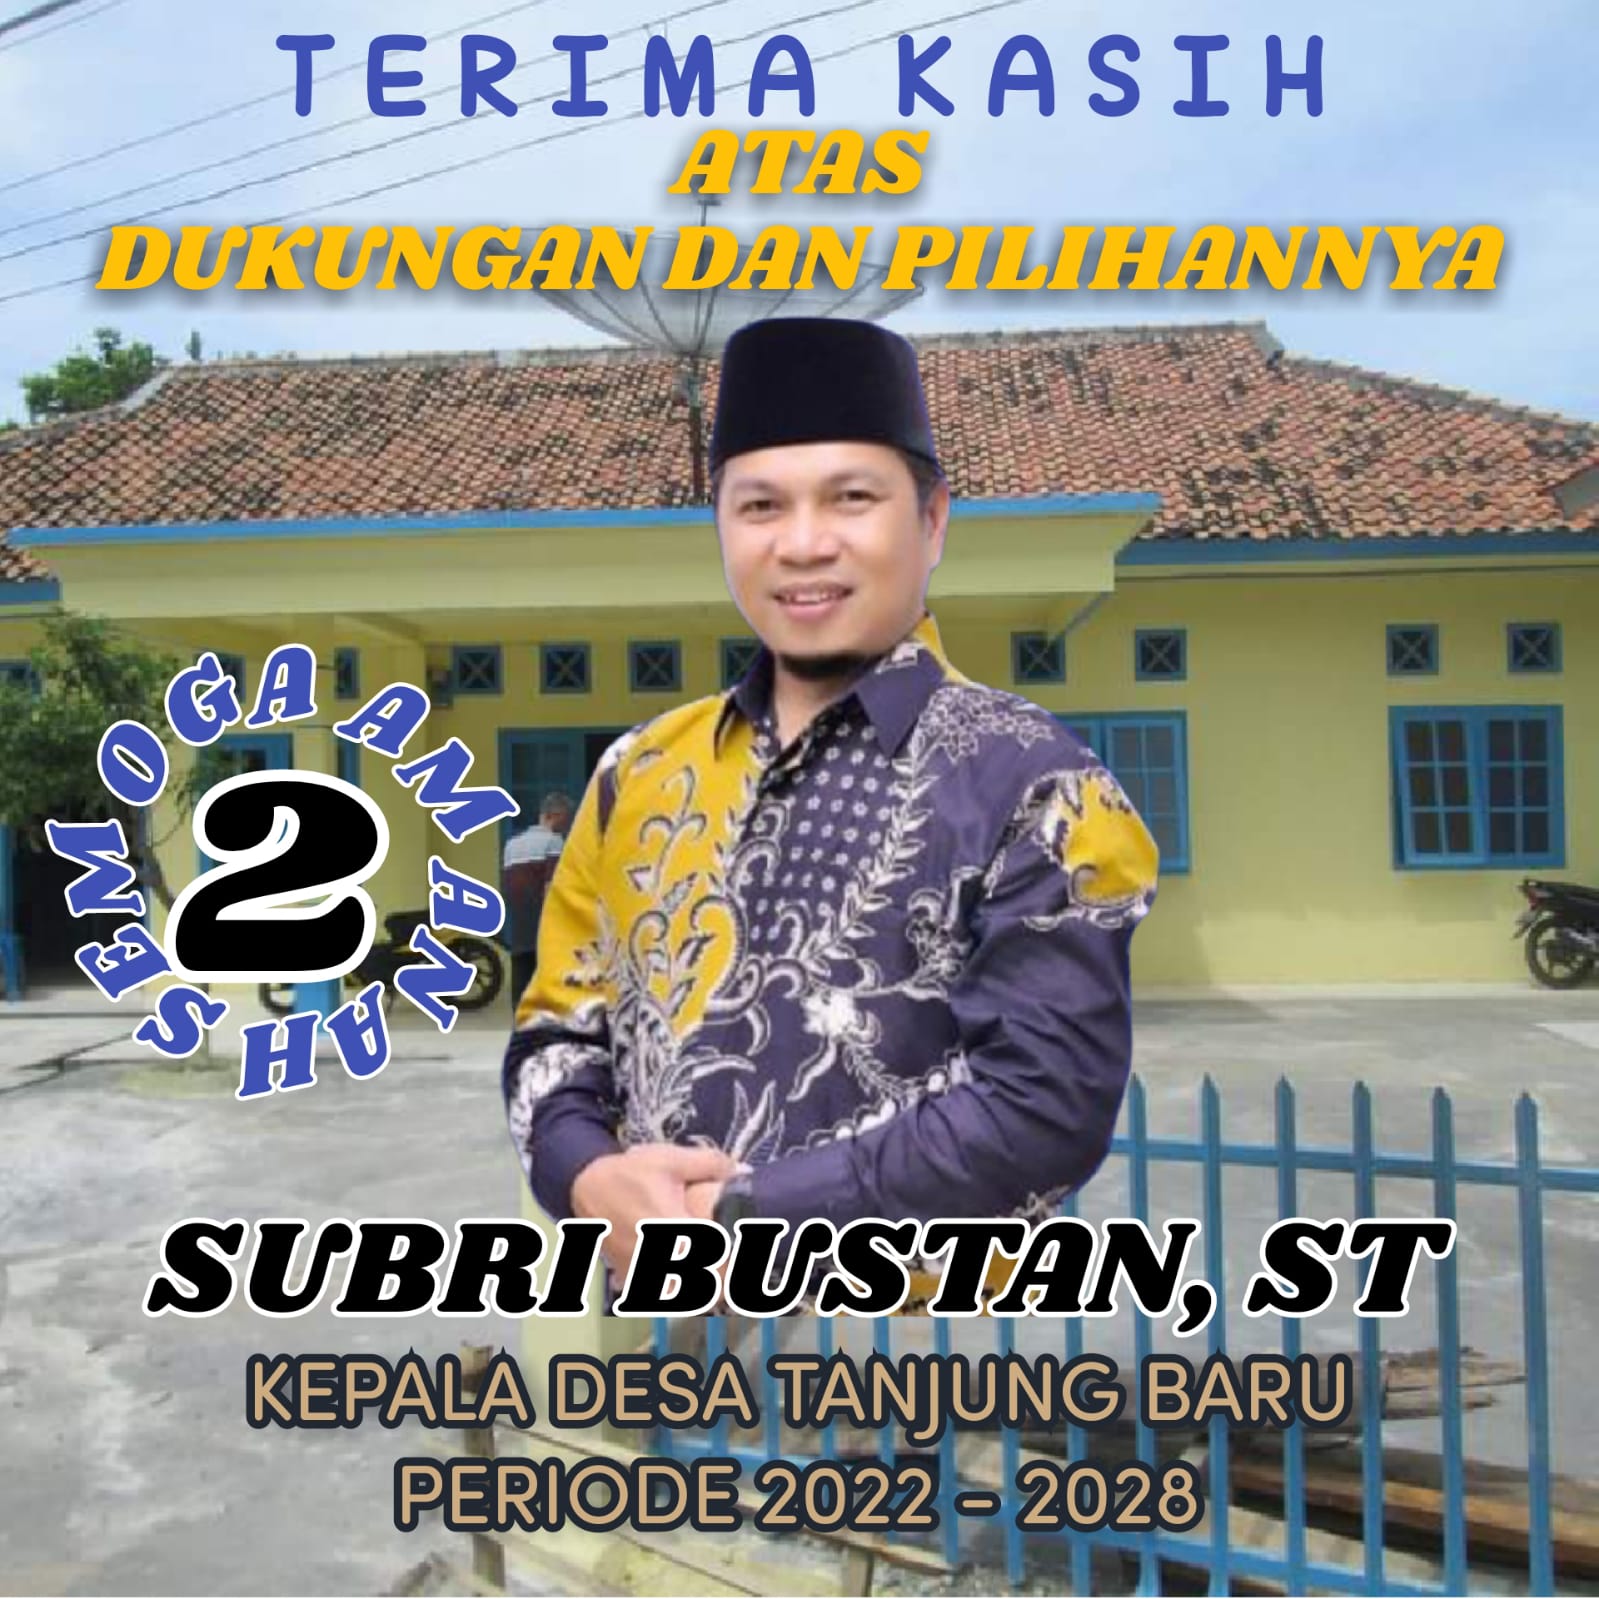 Subri Bustan Kades Tanjung Baru 2022-2028